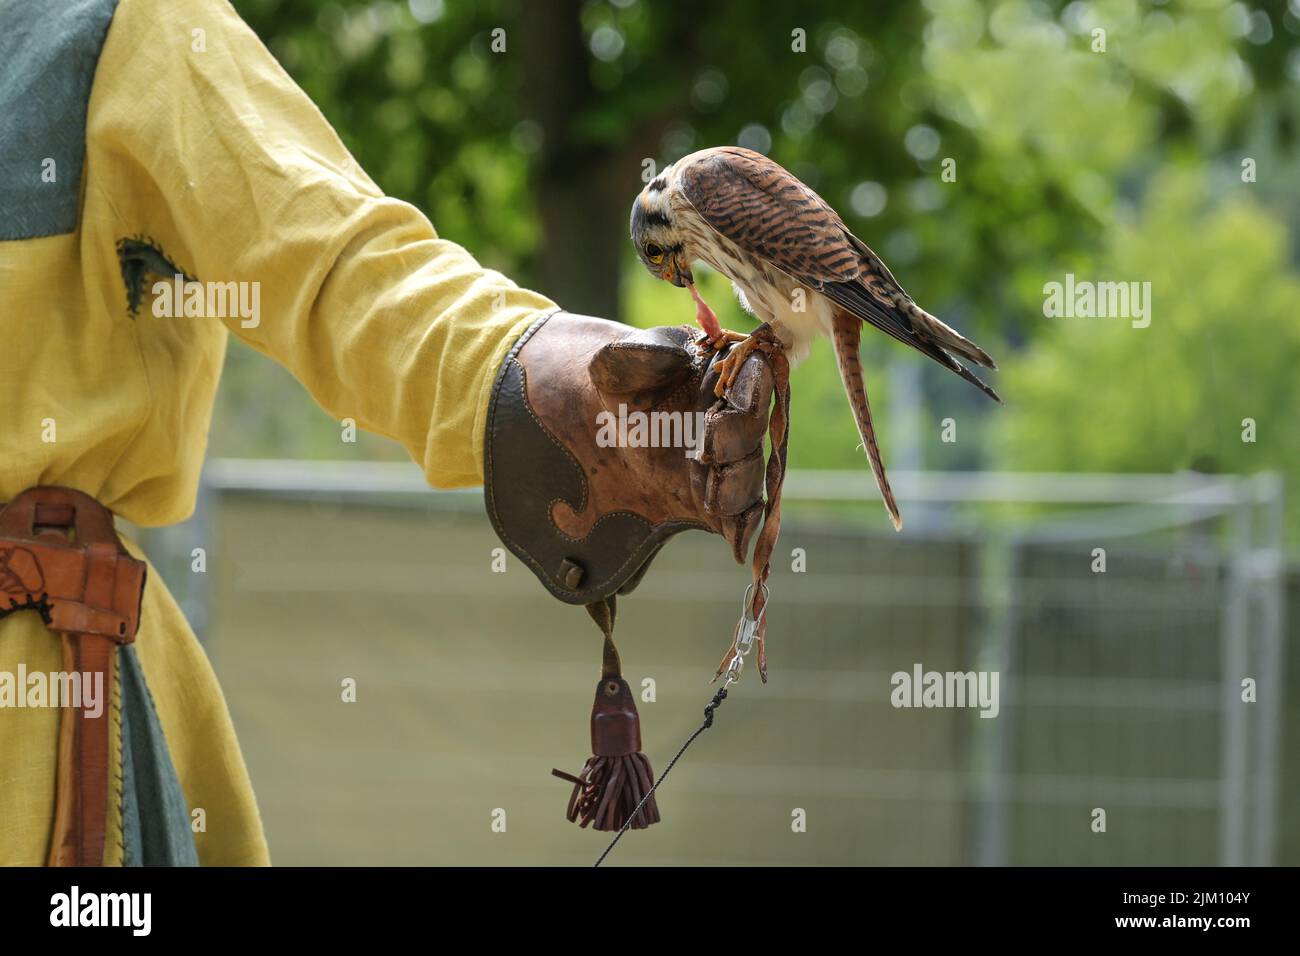 Falcon wird auf dem Lederhandschuh von einem Falkner gefüttert, einem kleinen, aber schnellen Jagdvogel während des Trainings, Kopierraum, ausgewählter Fokus Stockfoto